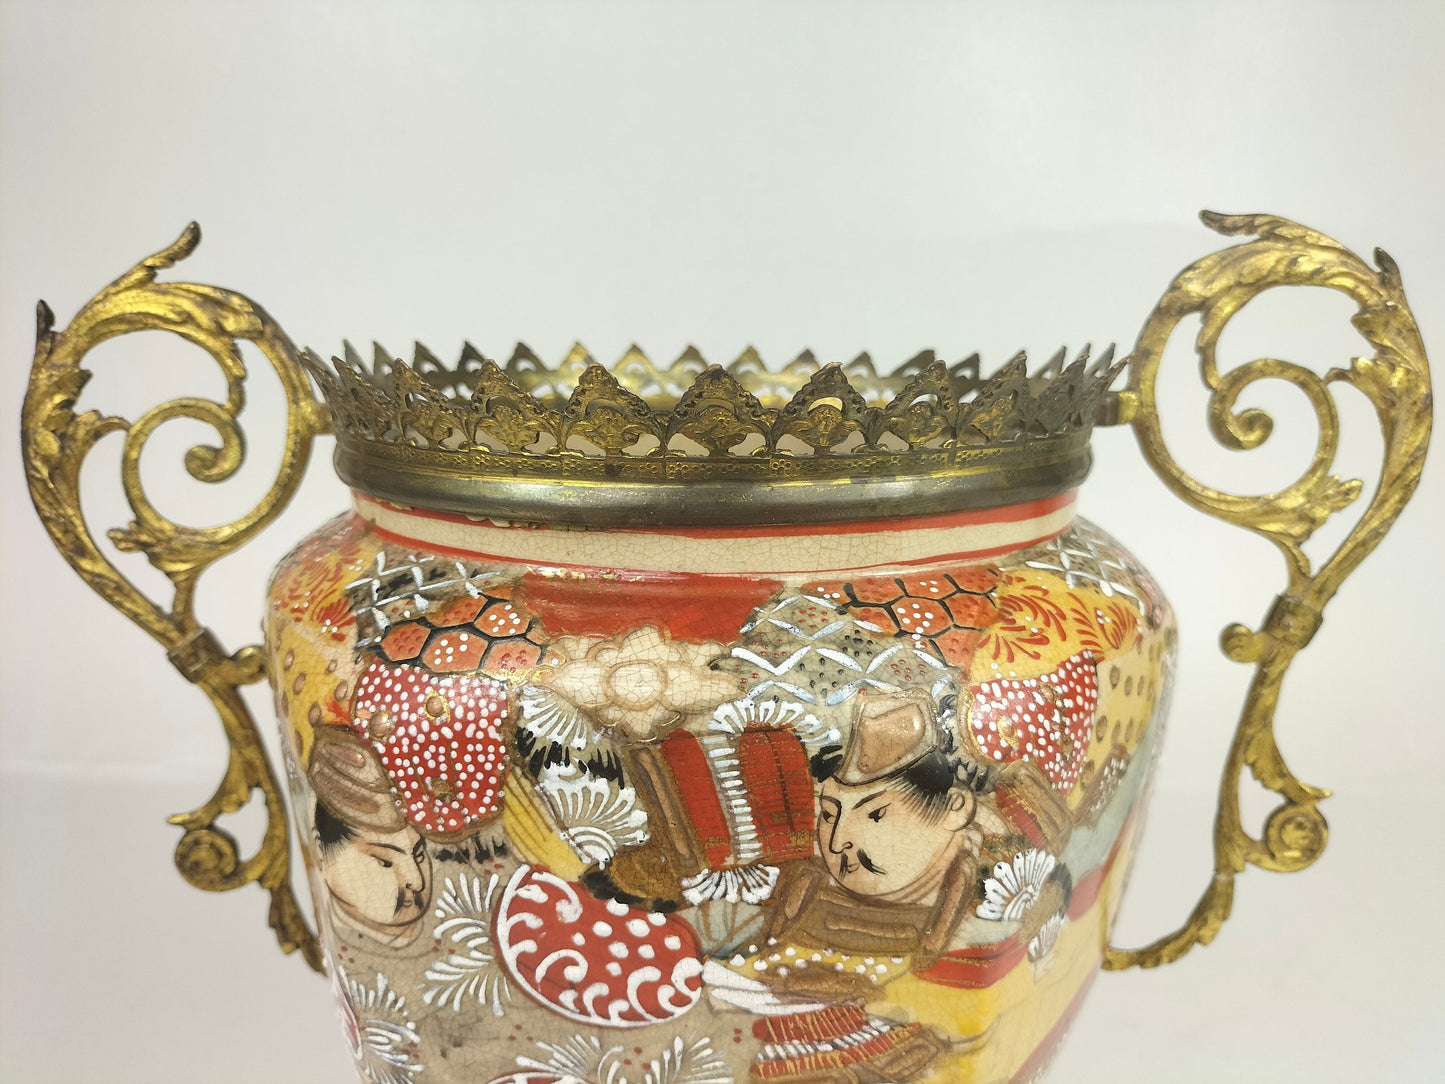 Ancienne jarre satsuma japonaise décorée de laiton doré // 19e siècle - Période Meiji